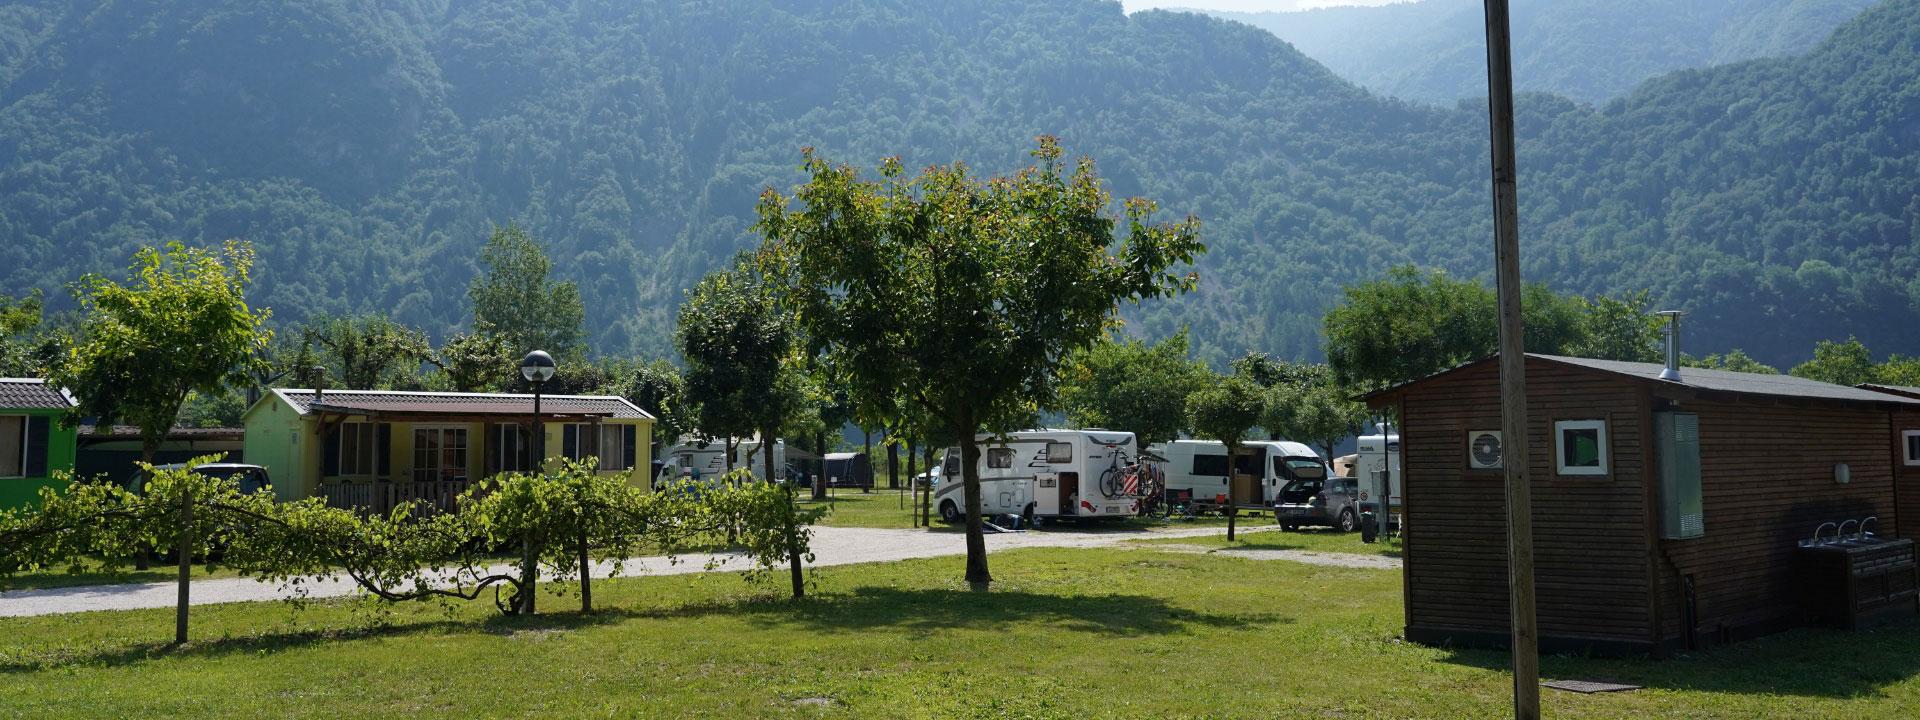 campinglago de angebot-juni-campingplatz-corlo-see-unterkuenfte-mit-seeblick-und-pool 005